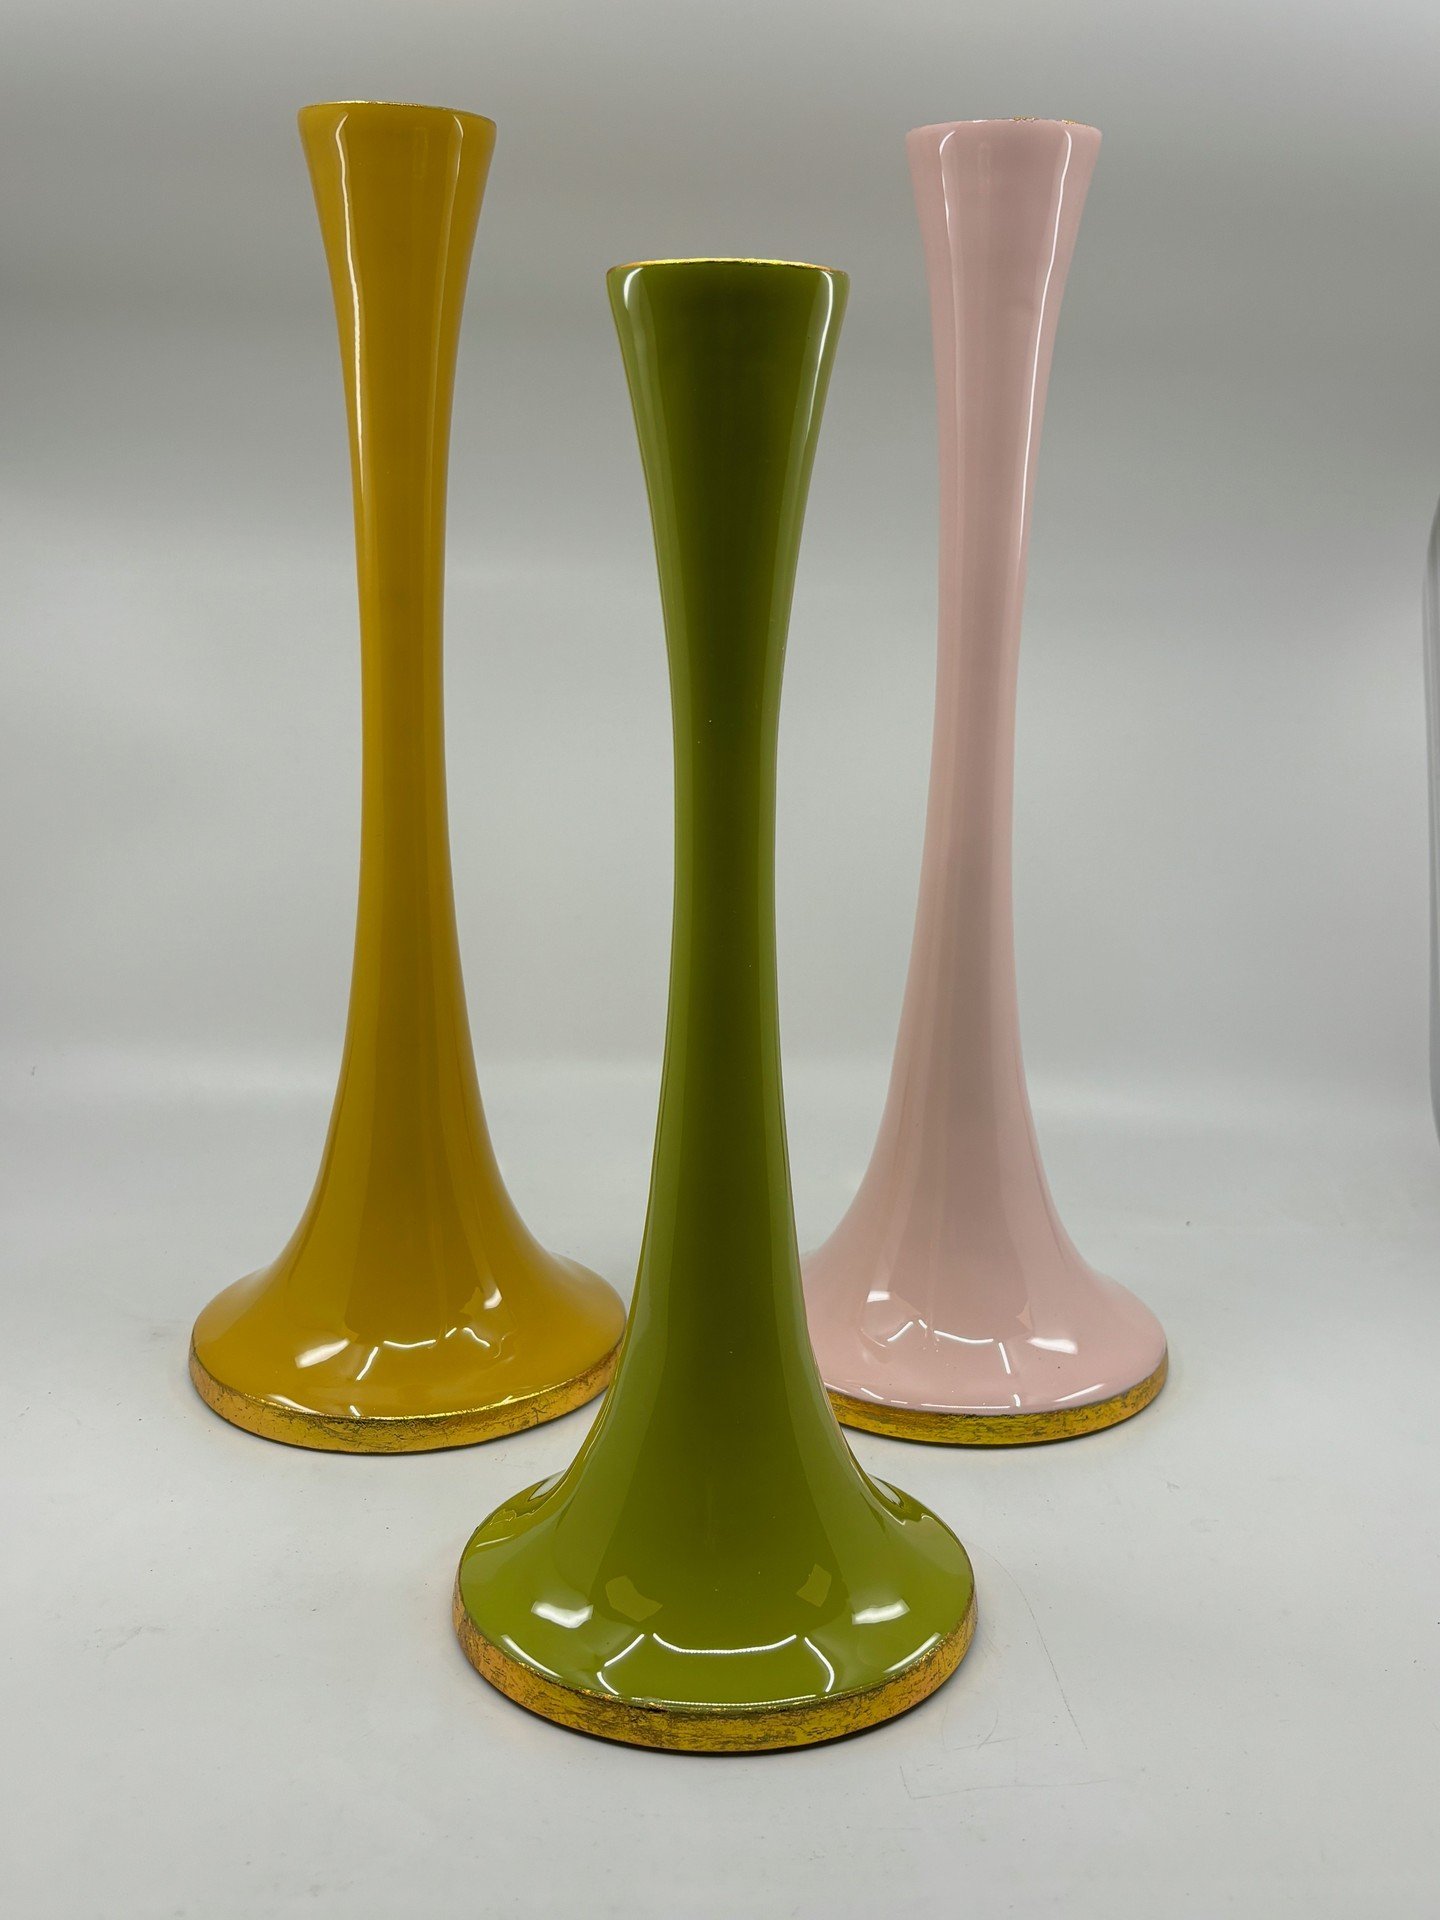 Studio Ferro has a large selection of unique vases, candlesticks, lanterns and candles. #studioferro #interiordesign #floraldesign #visitmorris #shopmorris